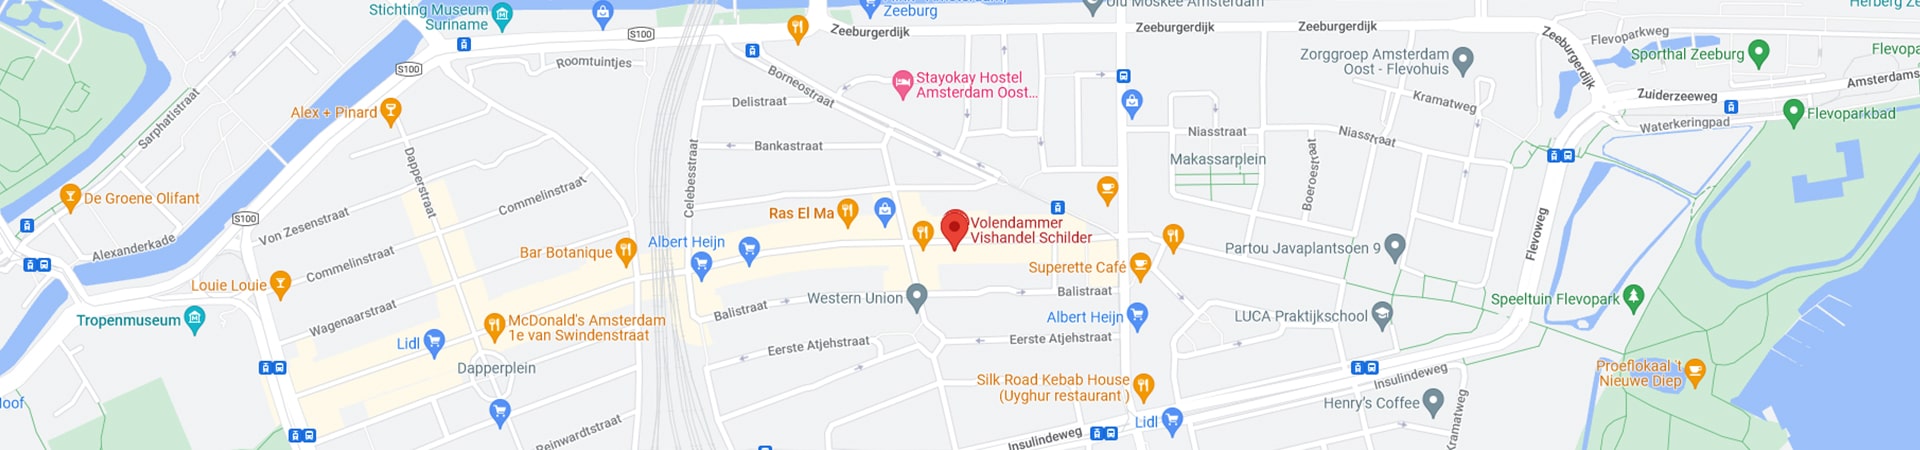 vishandel-schilder-amsterdam-google-maps